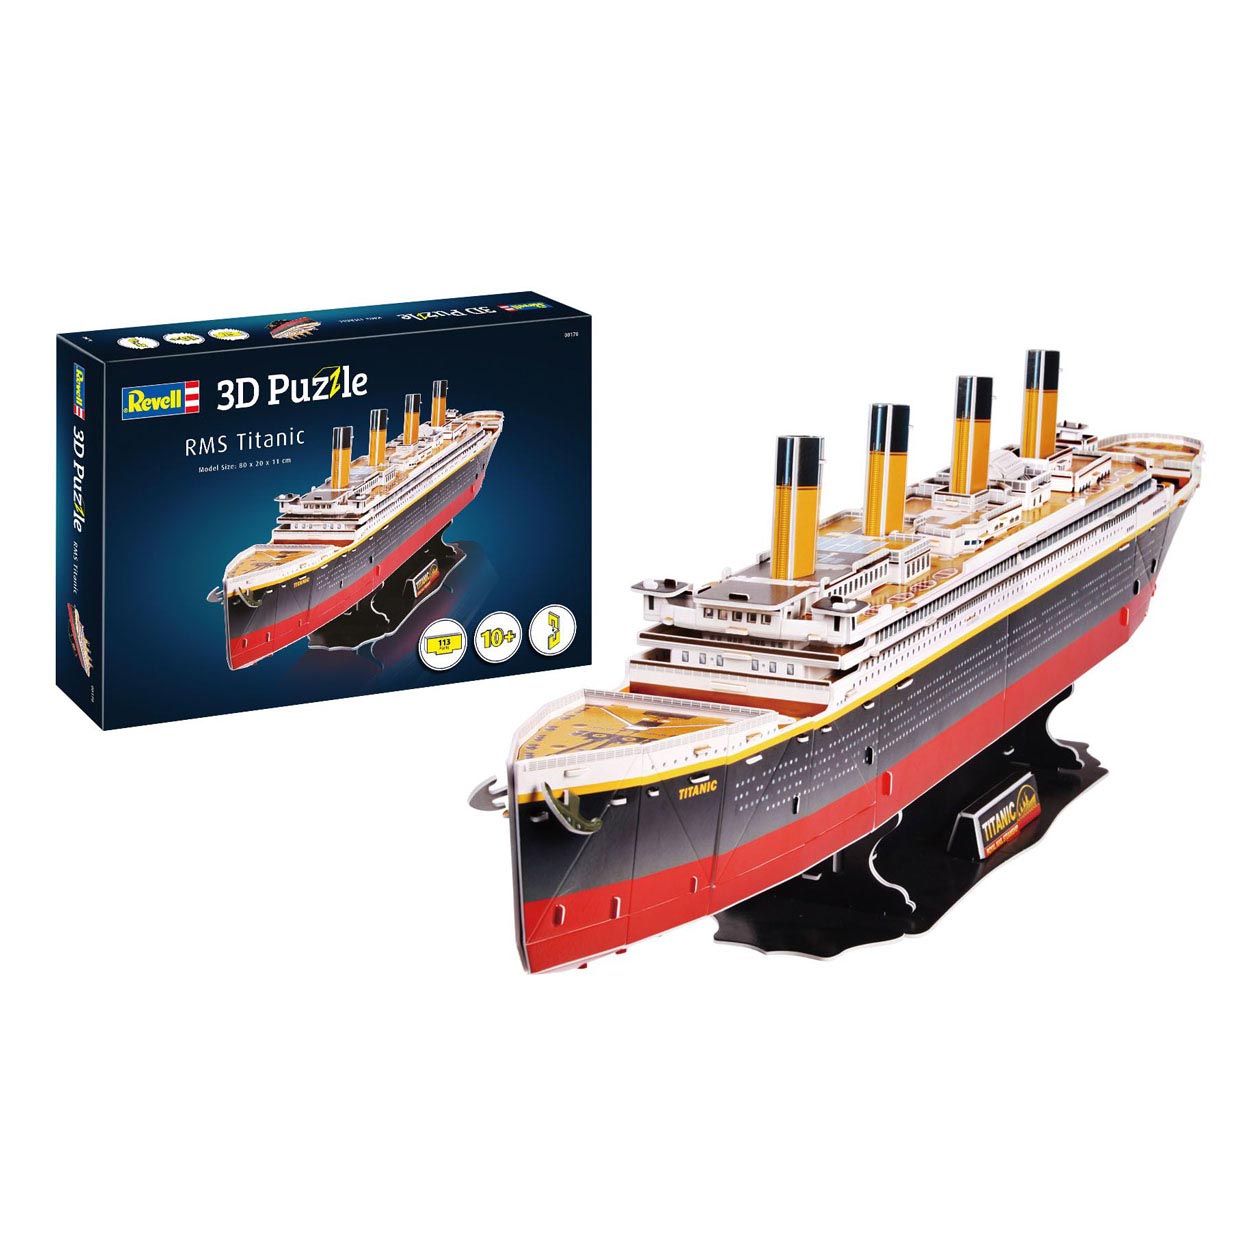 RMS Titanic Toys 3D Puzzle Thimble Building Kit - Revell |